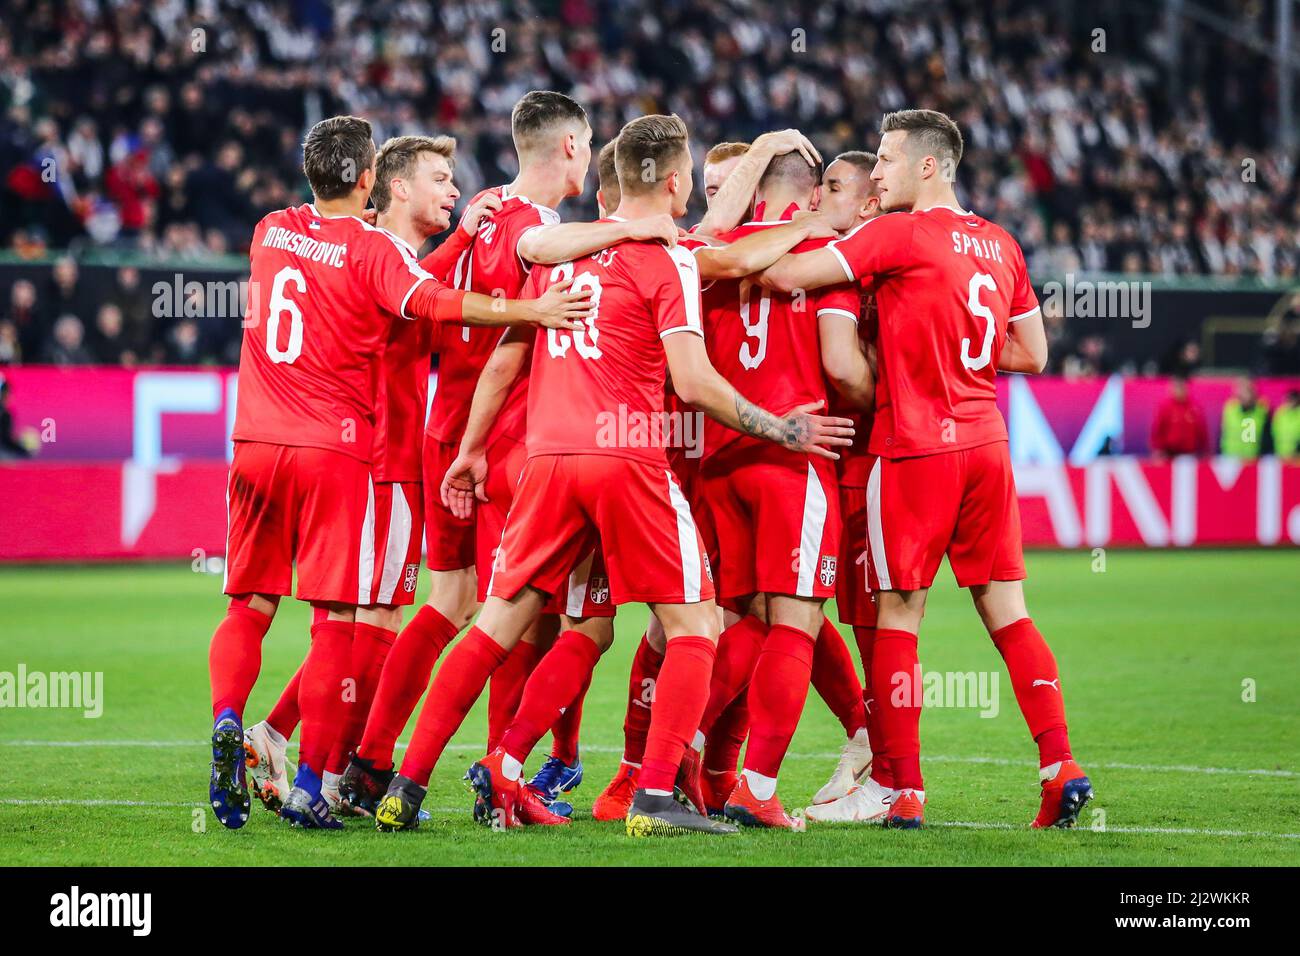 Wolfsburg, Alemania, 20 de marzo de 2019: El equipo nacional serbio celebra un gol durante el partido internacional de fútbol Alemania vs Serbia en Wolfsburg Foto de stock